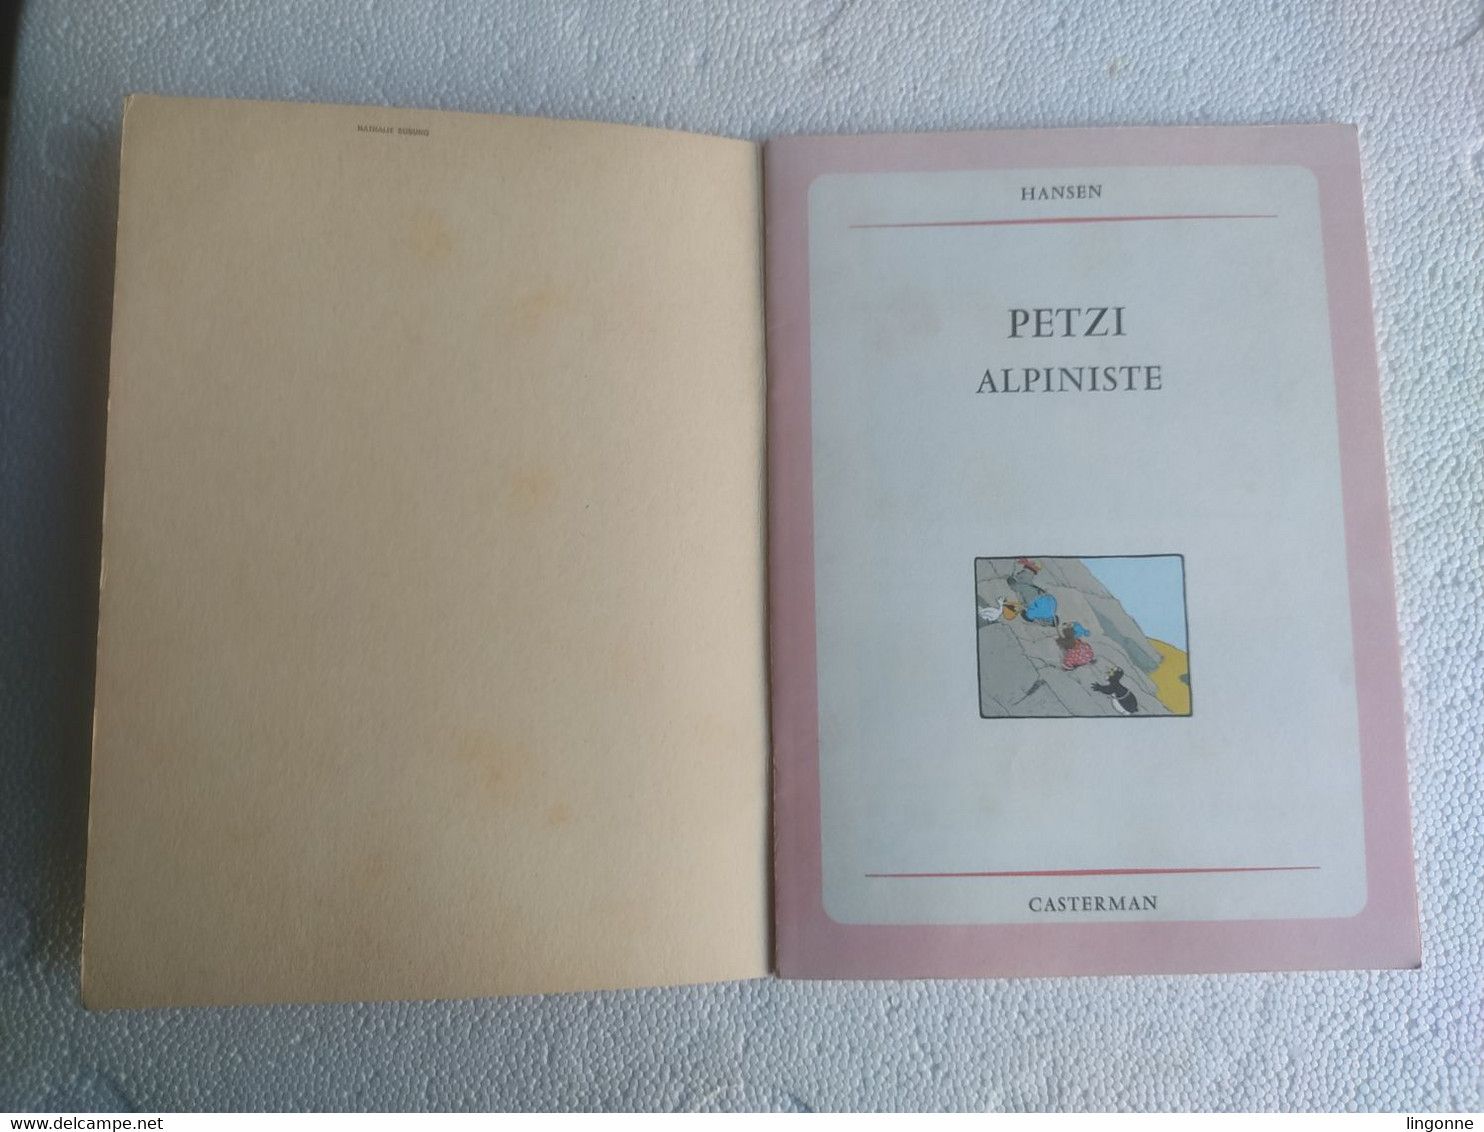 1966 BD PETZI ALPINISTE N° 7 HANSEN EO CASTERMAN - Petzi